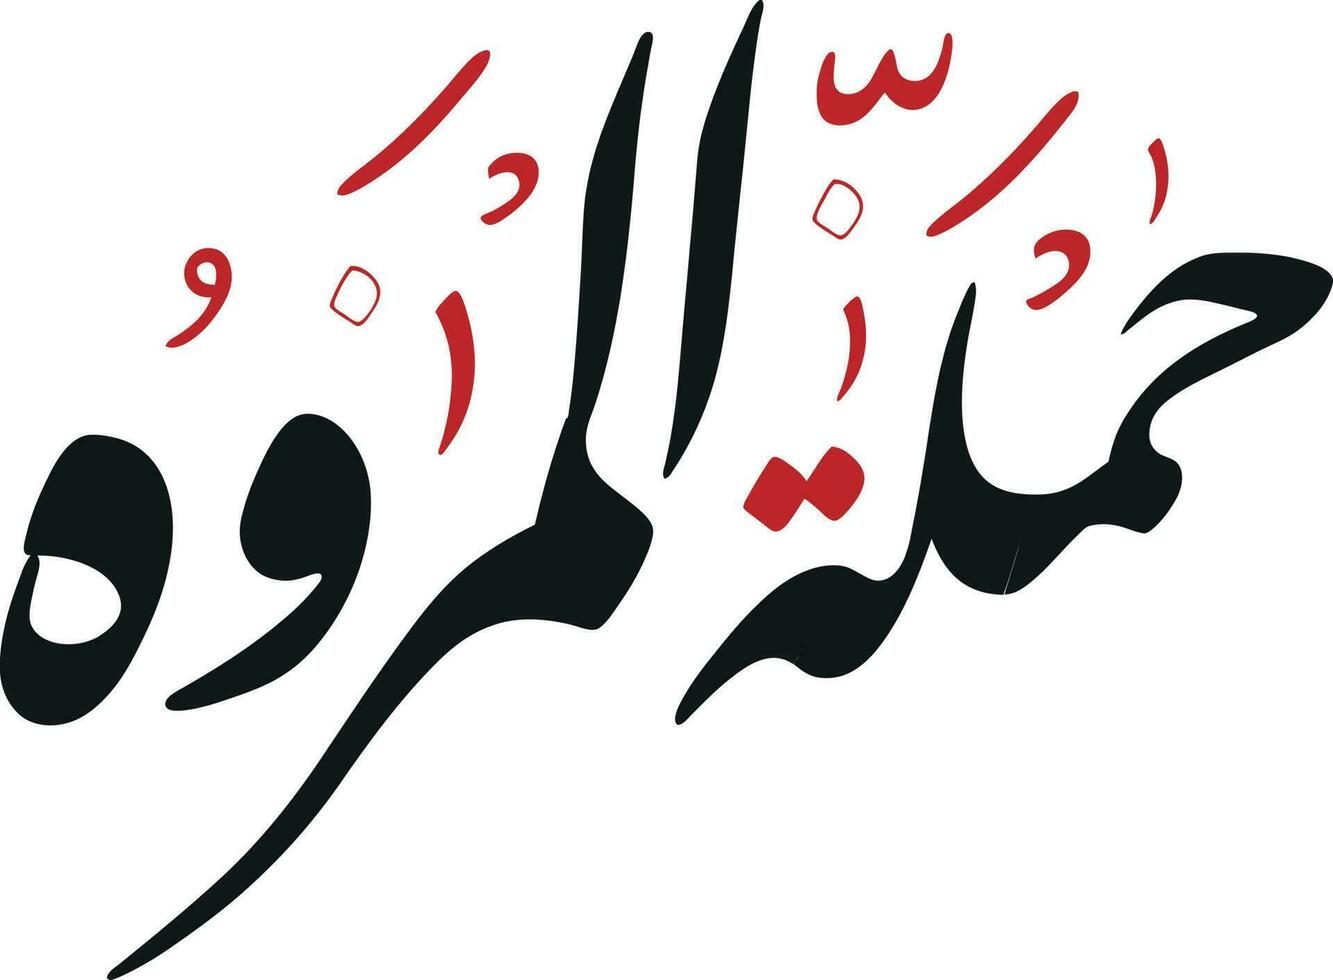 almarwa Arabisch typografie tekst vertaald naar al marwa berg in mekka ksa saudia Arabië vector